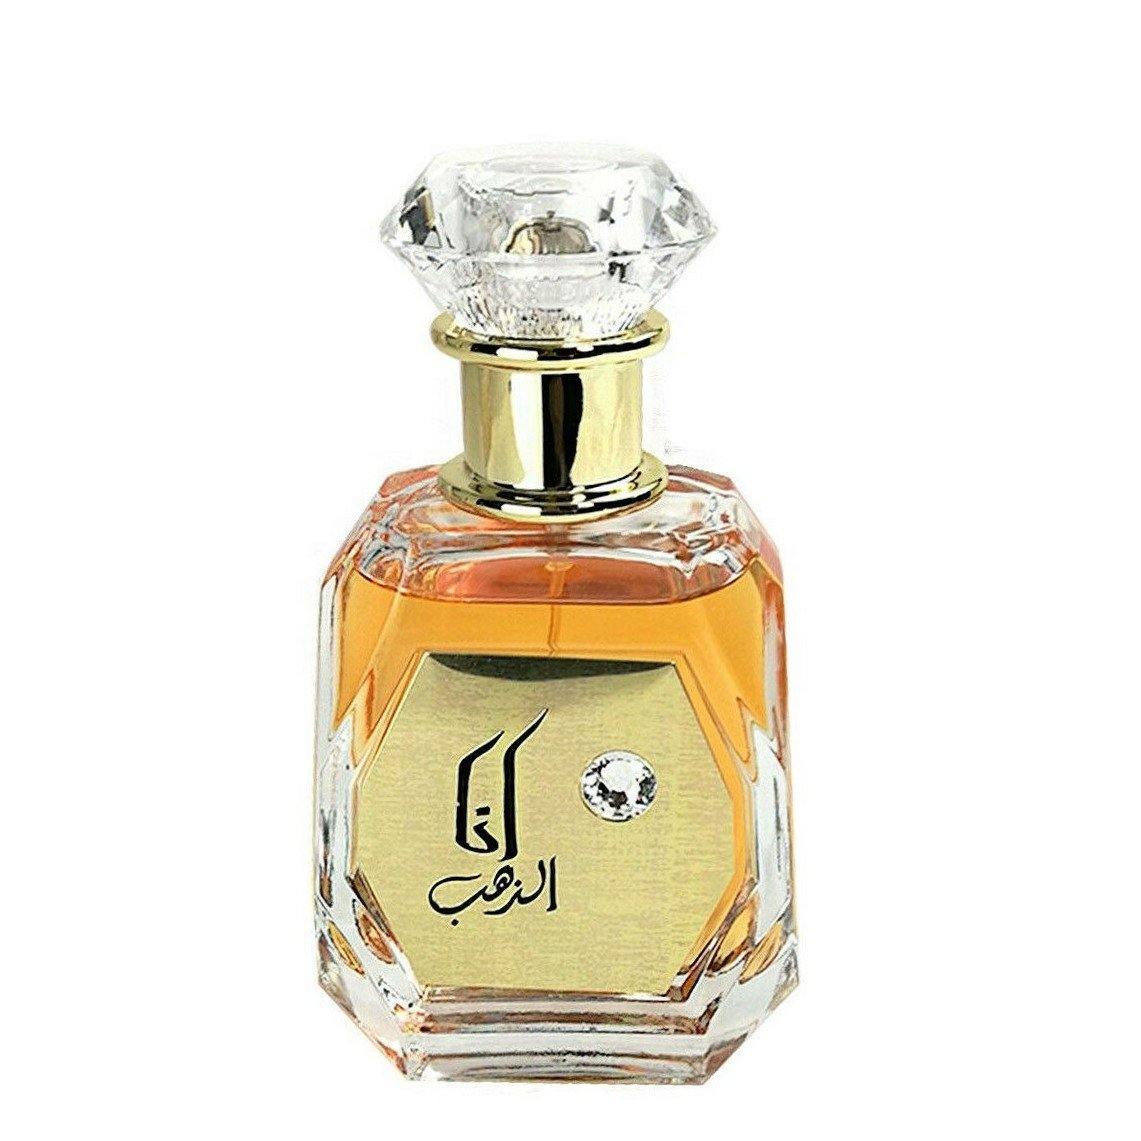 100 ml Eau de Perfume Ana Dahab cu Arome Fructat-Citrate pentru Femei - Galeria de Bijuterii